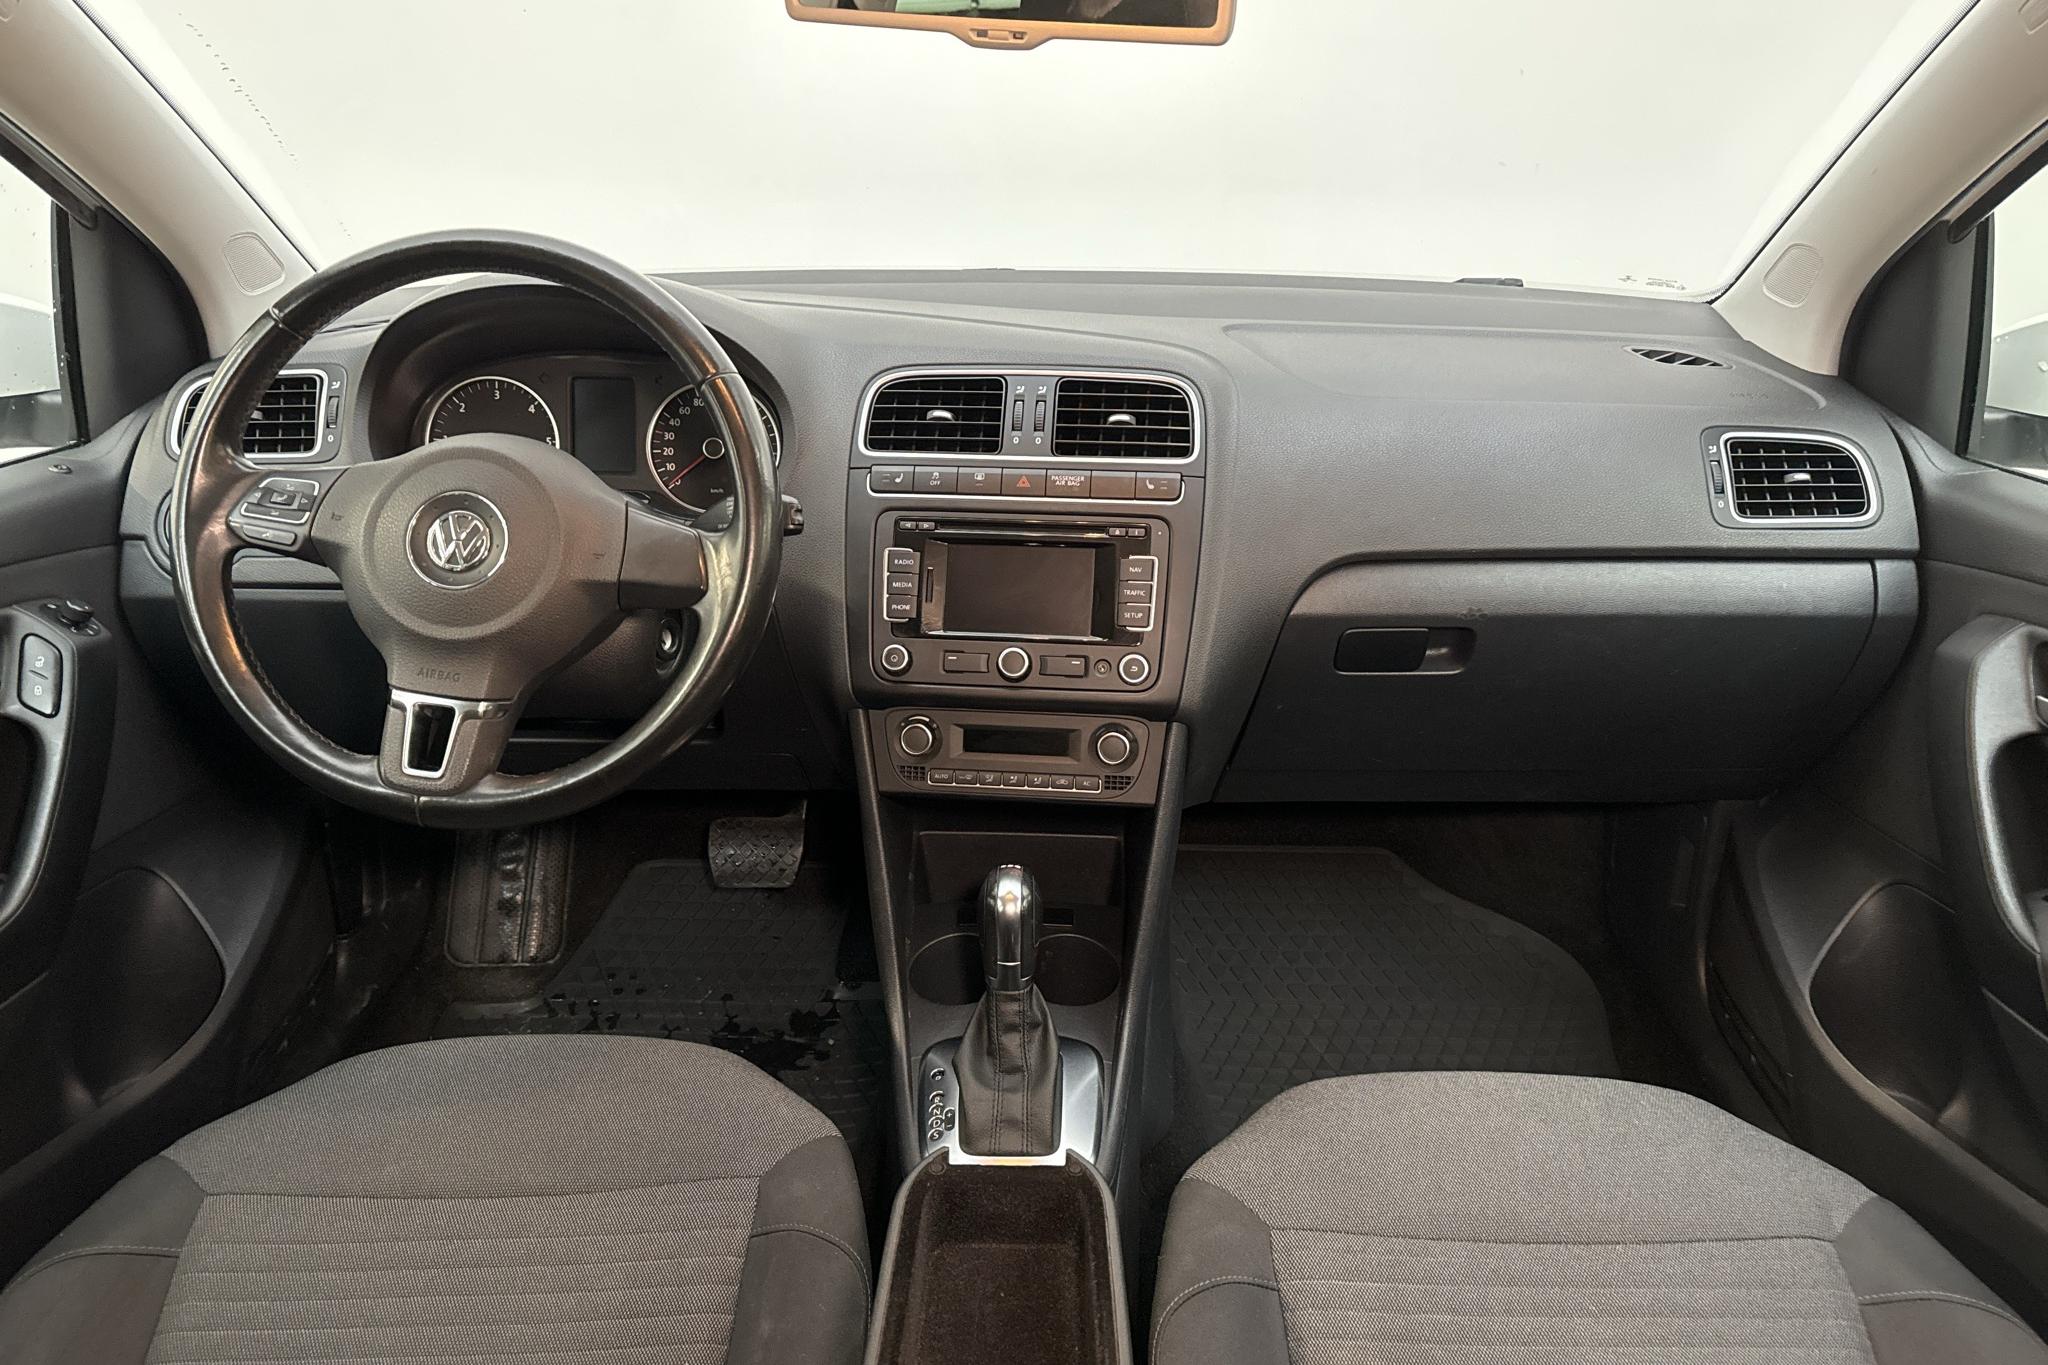 VW Polo 1.6 TDI 5dr (90hk) - 181 190 km - Automatic - white - 2012